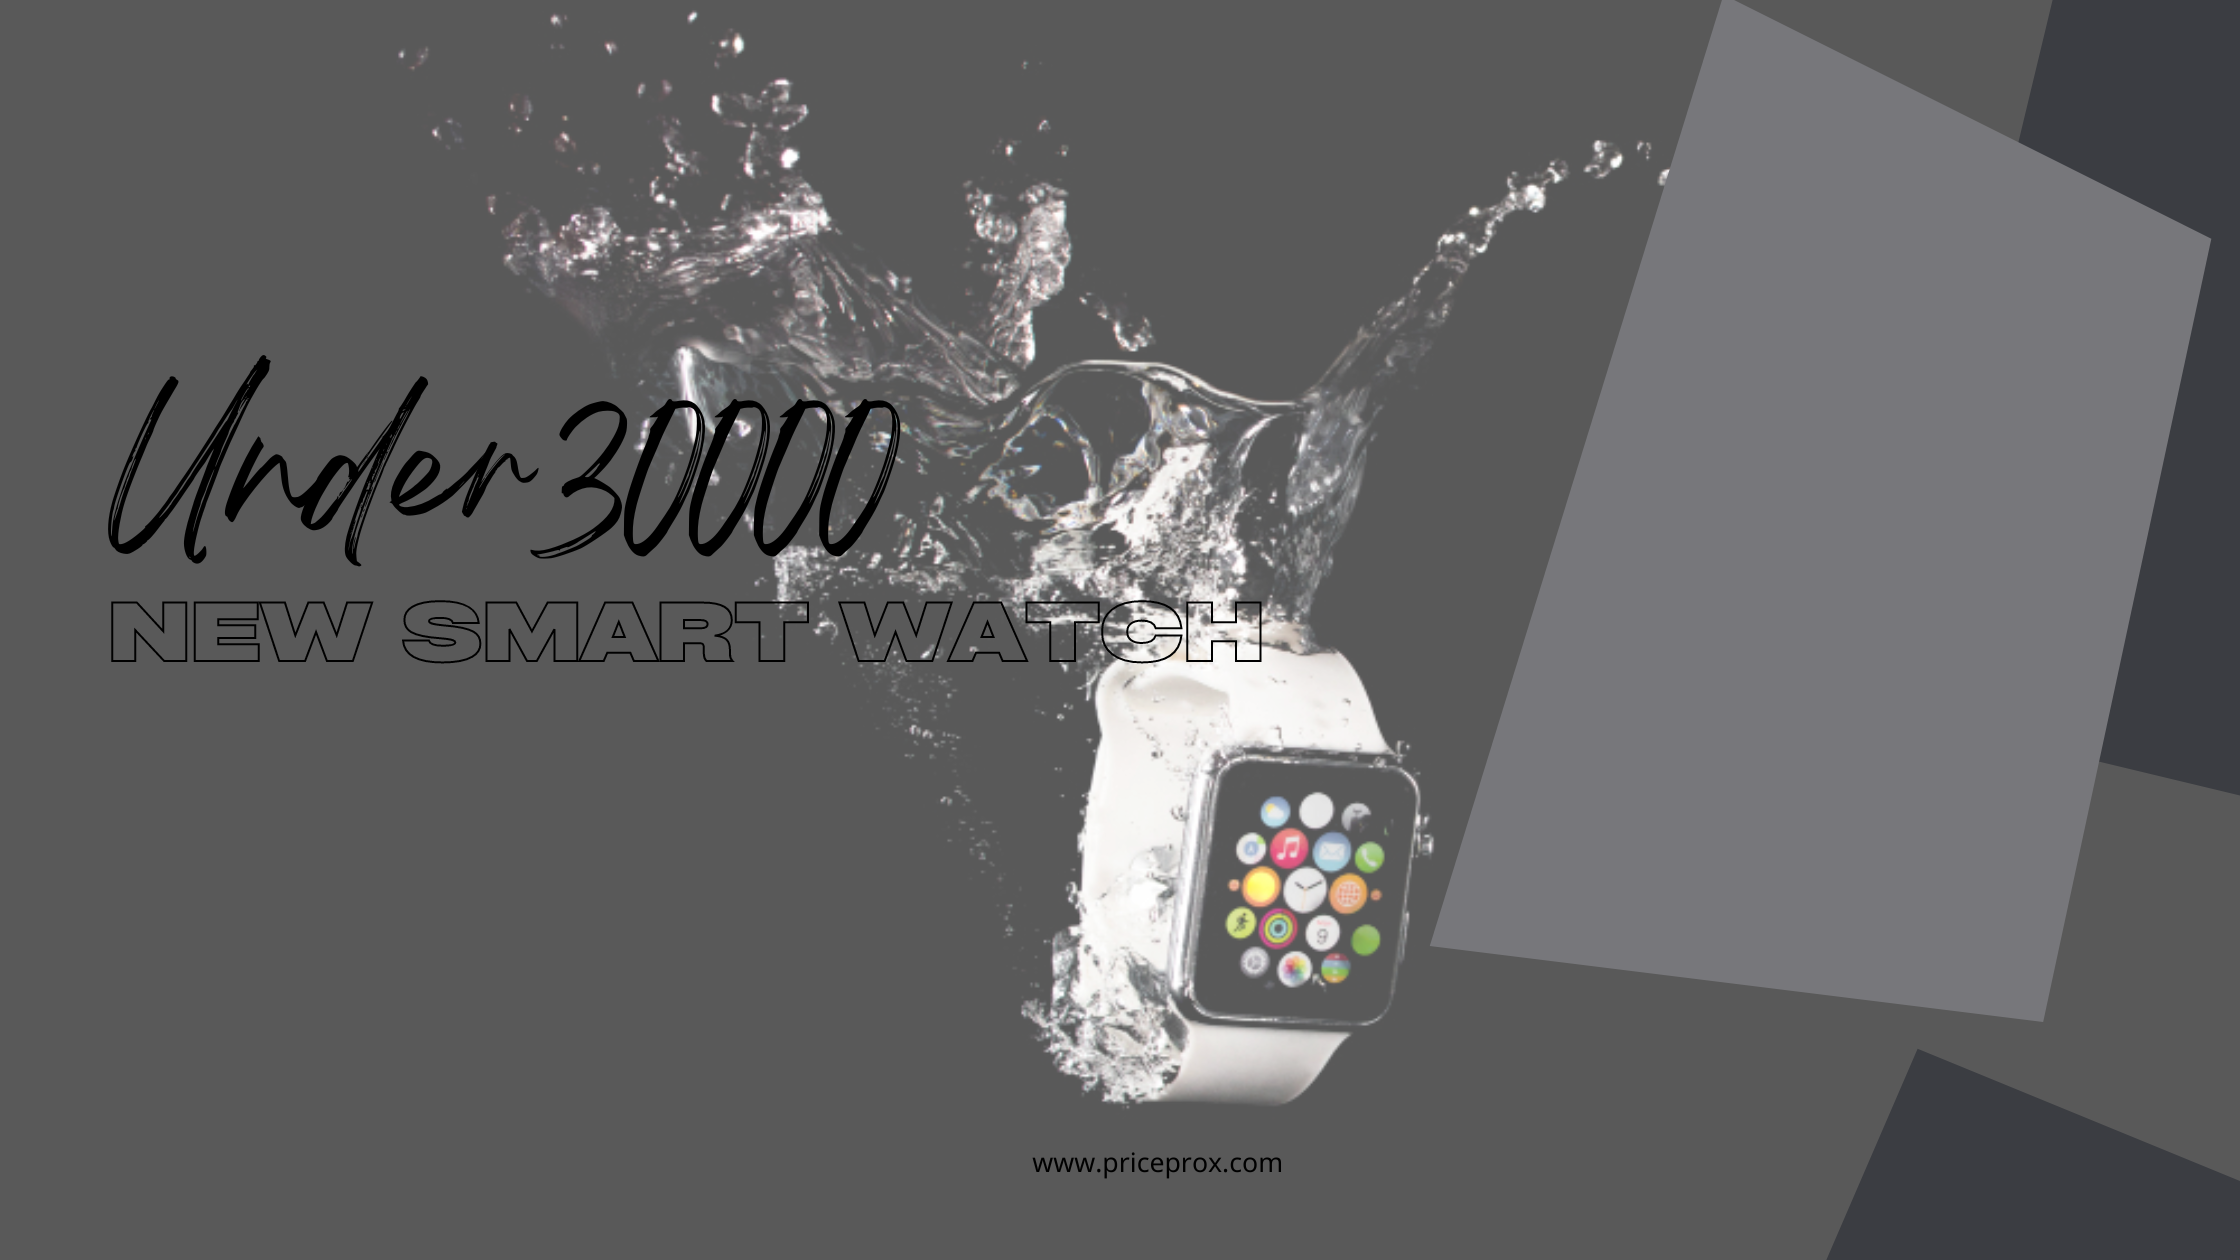 smartwatches under 30000